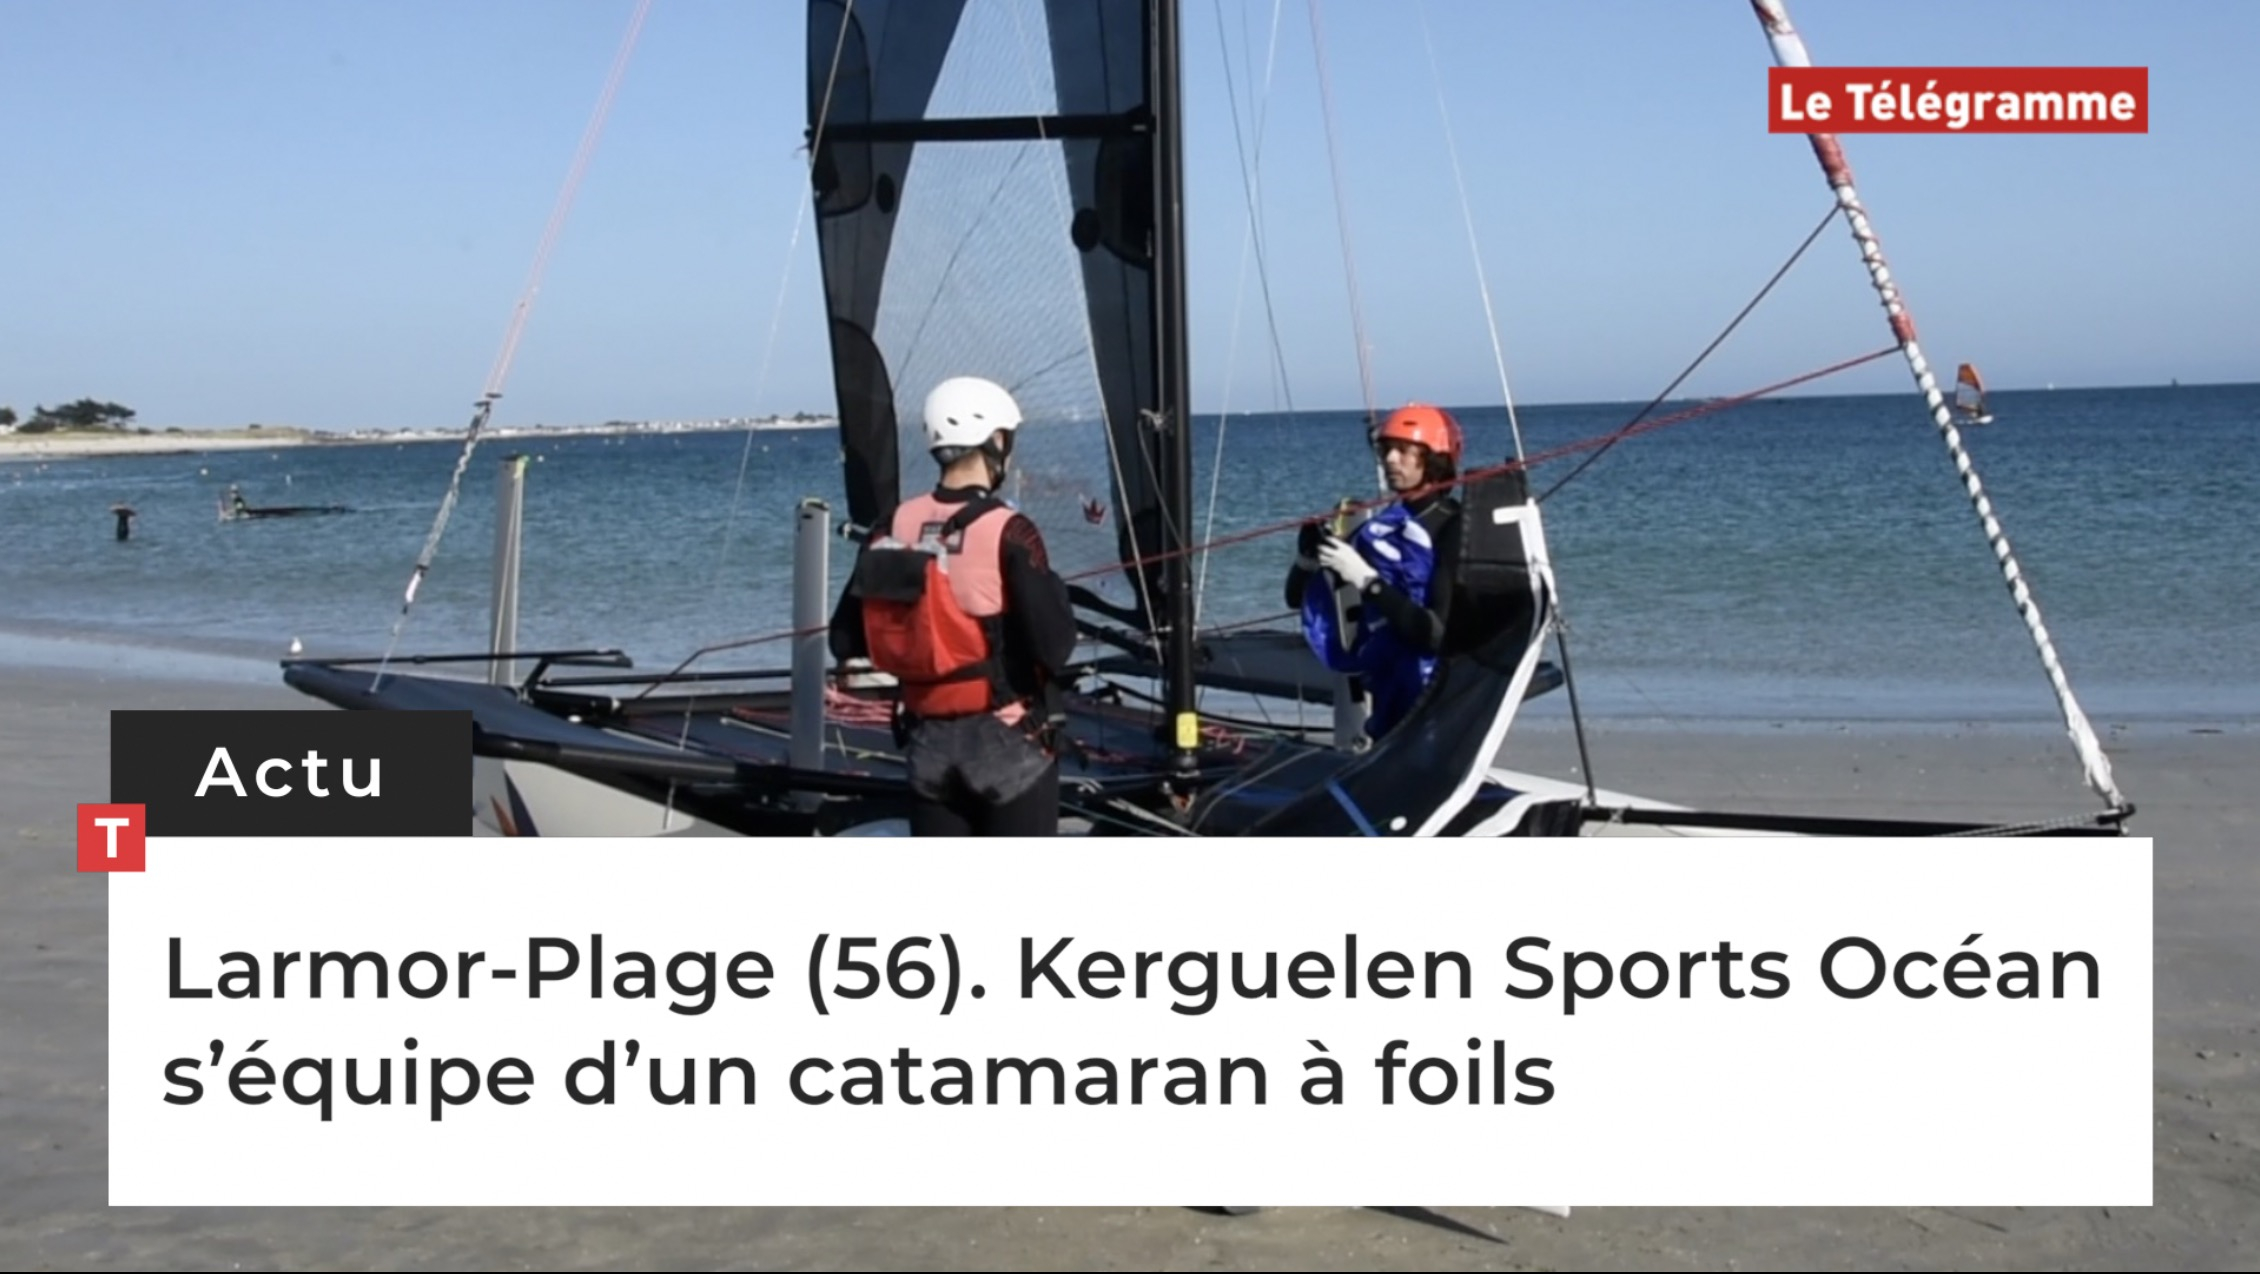 Larmor-Plage (56). Kerguelen Sports Océan s’équipe d’un catamaran à foils  (Le Télégramme)